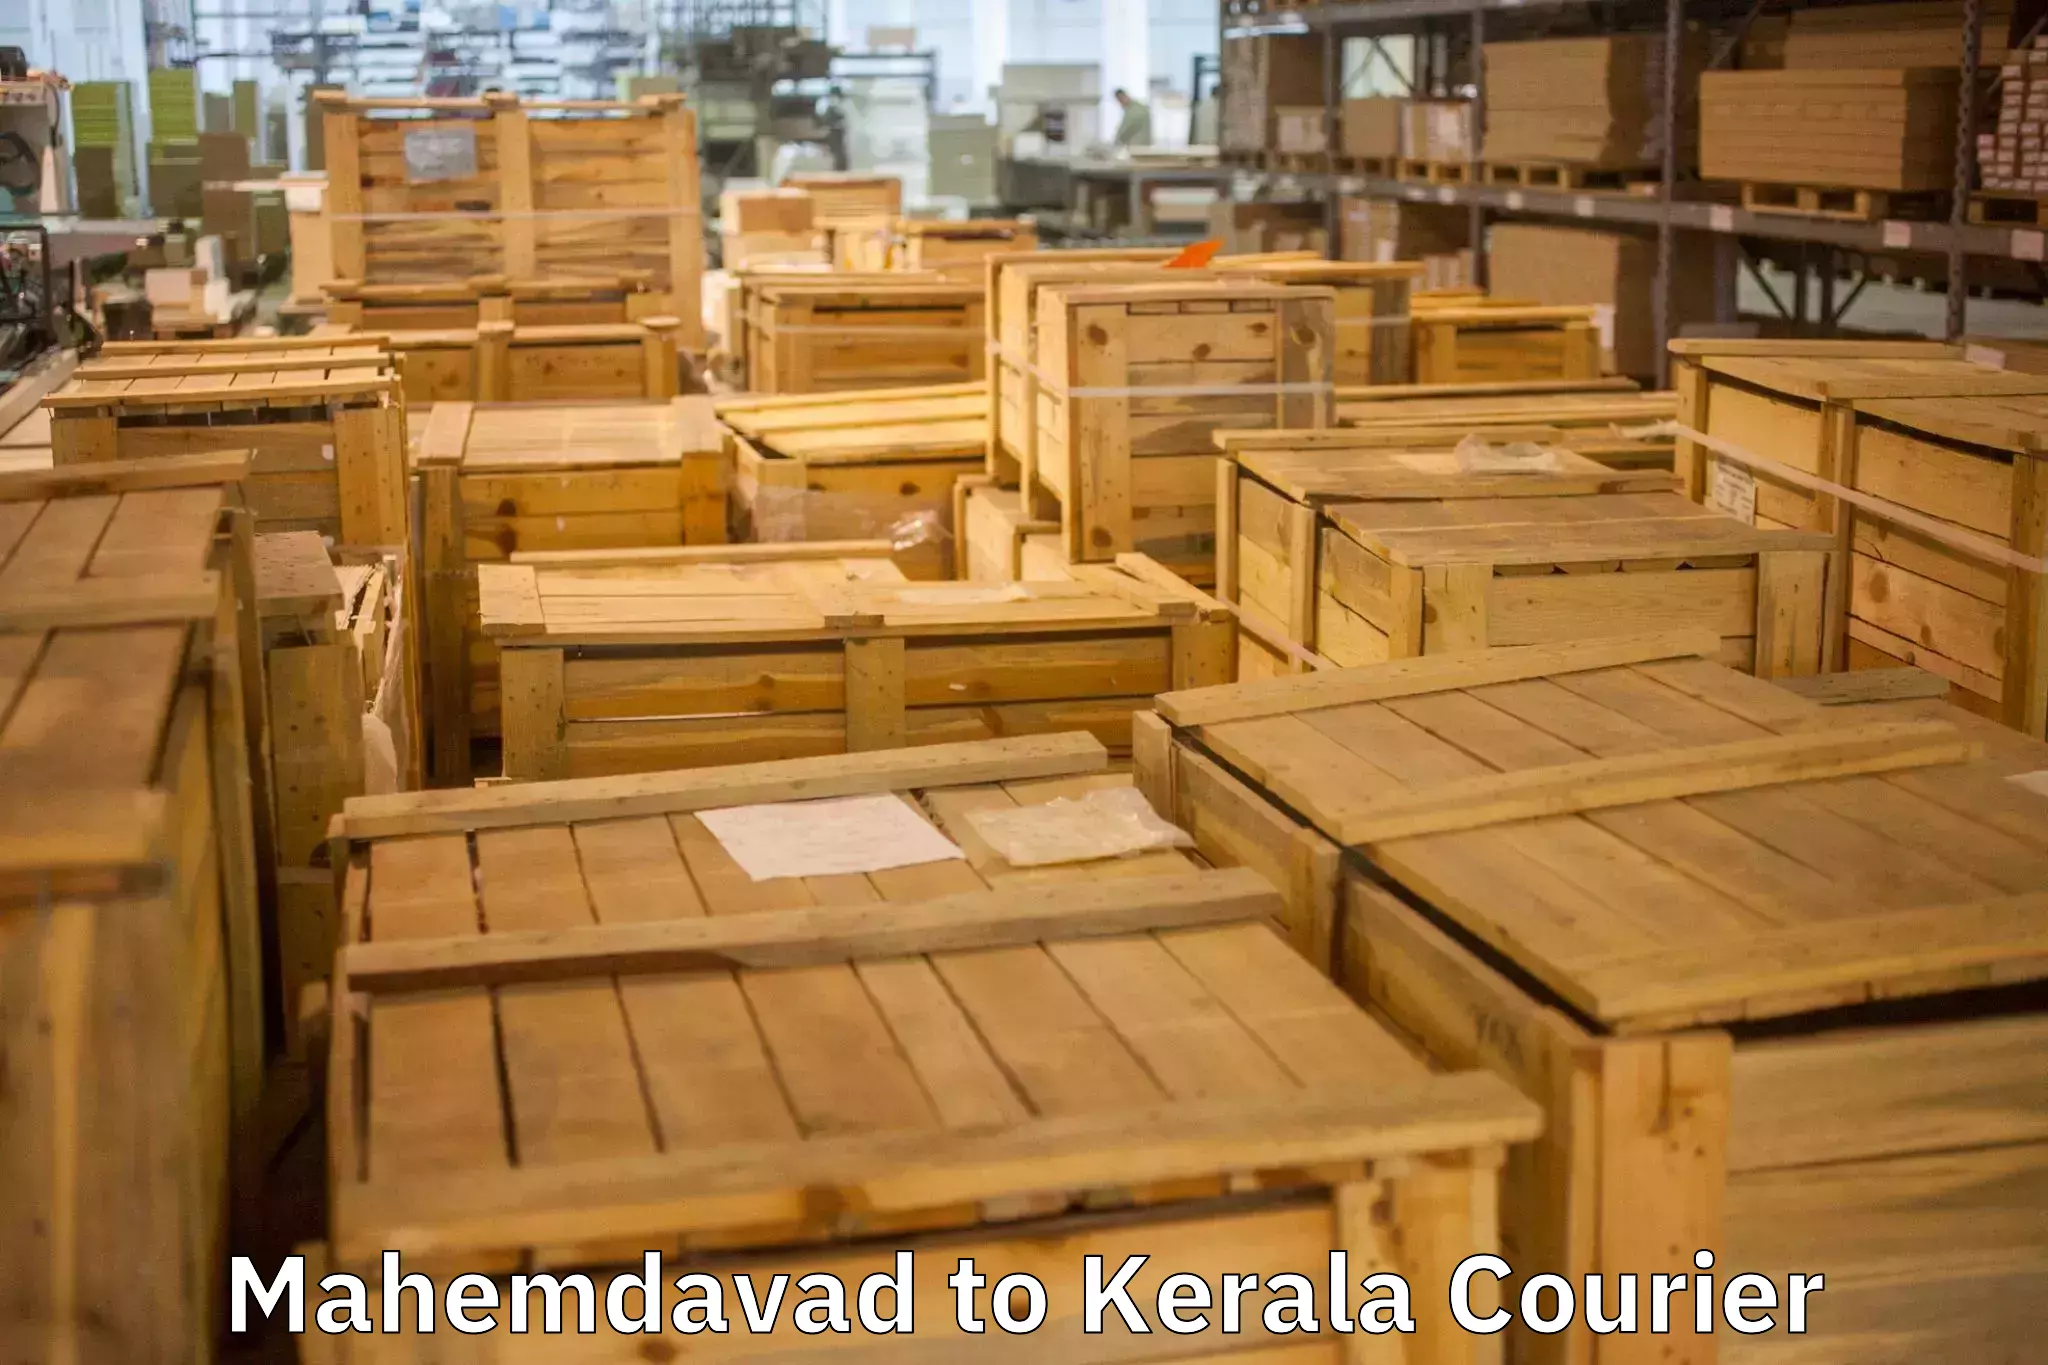 Trusted furniture transport Mahemdavad to Koothattukulam